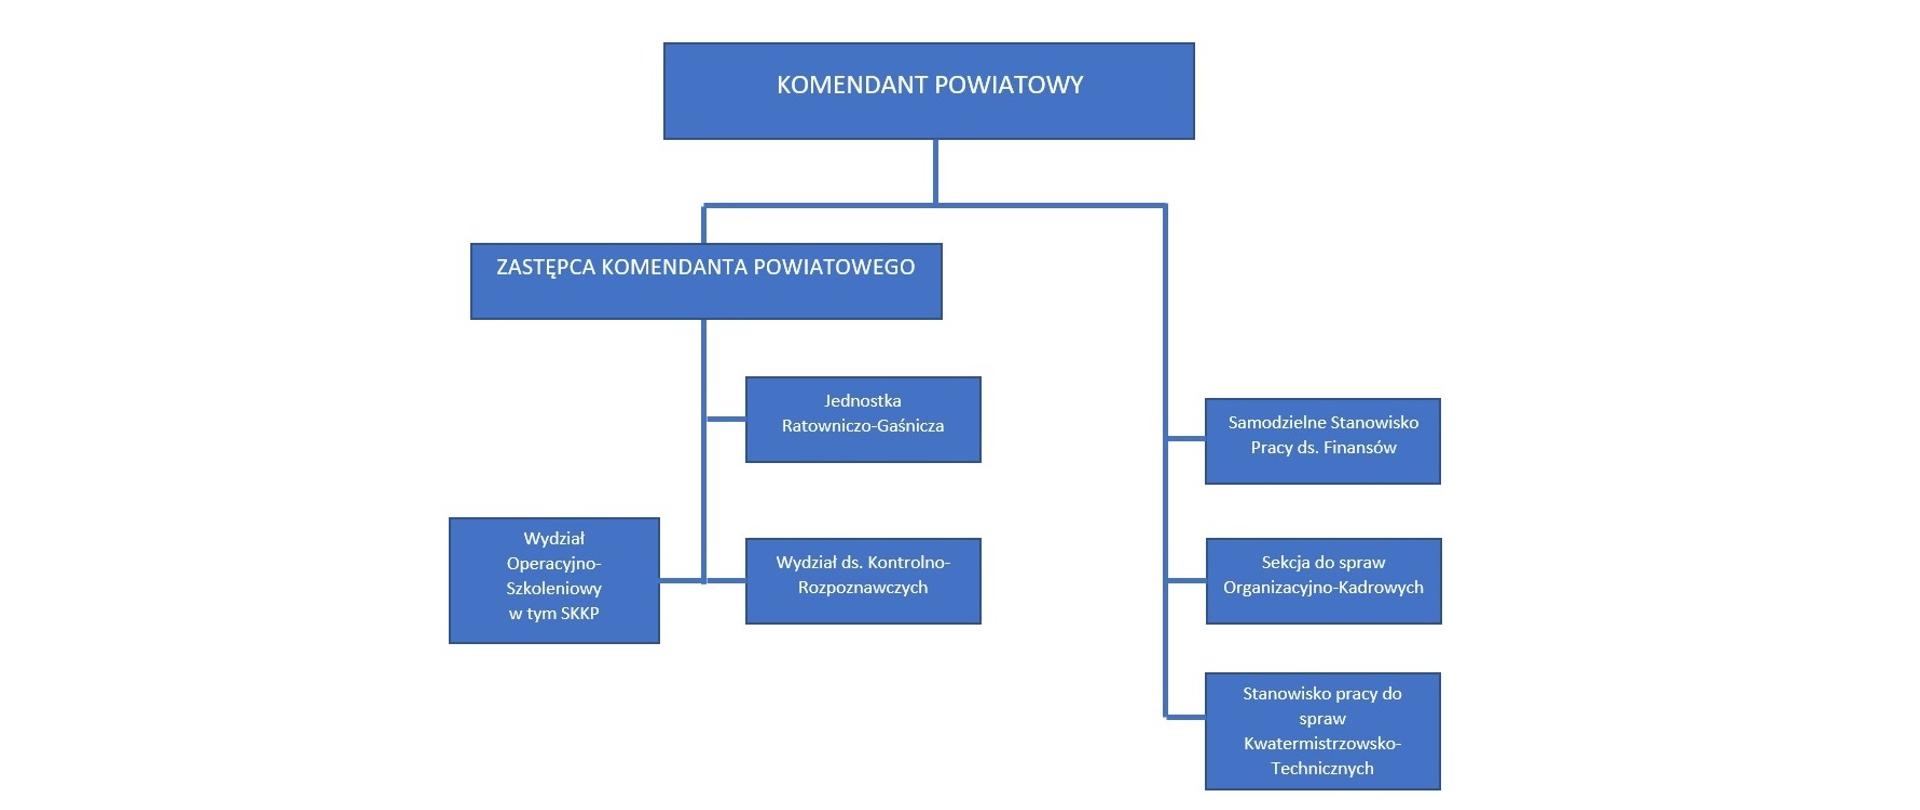 Grafika przedstawia schemat organizacyjny w Komendzie Powiatowej Państwowej Straży Pożarnej w Zakopanem.